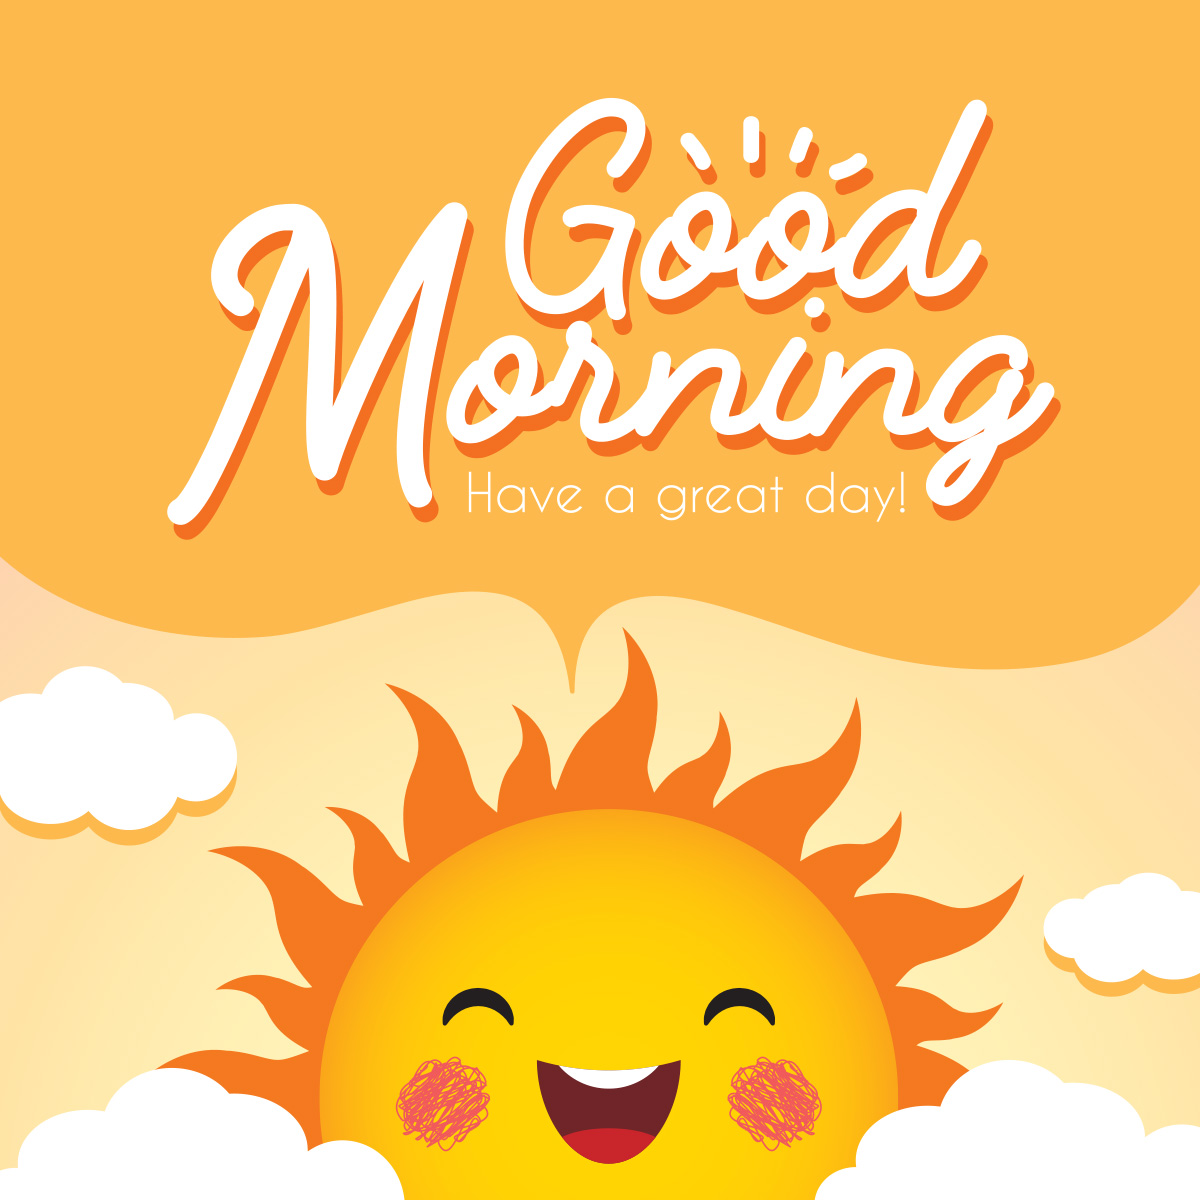 Картинка доброе утро на английском языке на жёлтом фоне с улыбающимся солнцем.